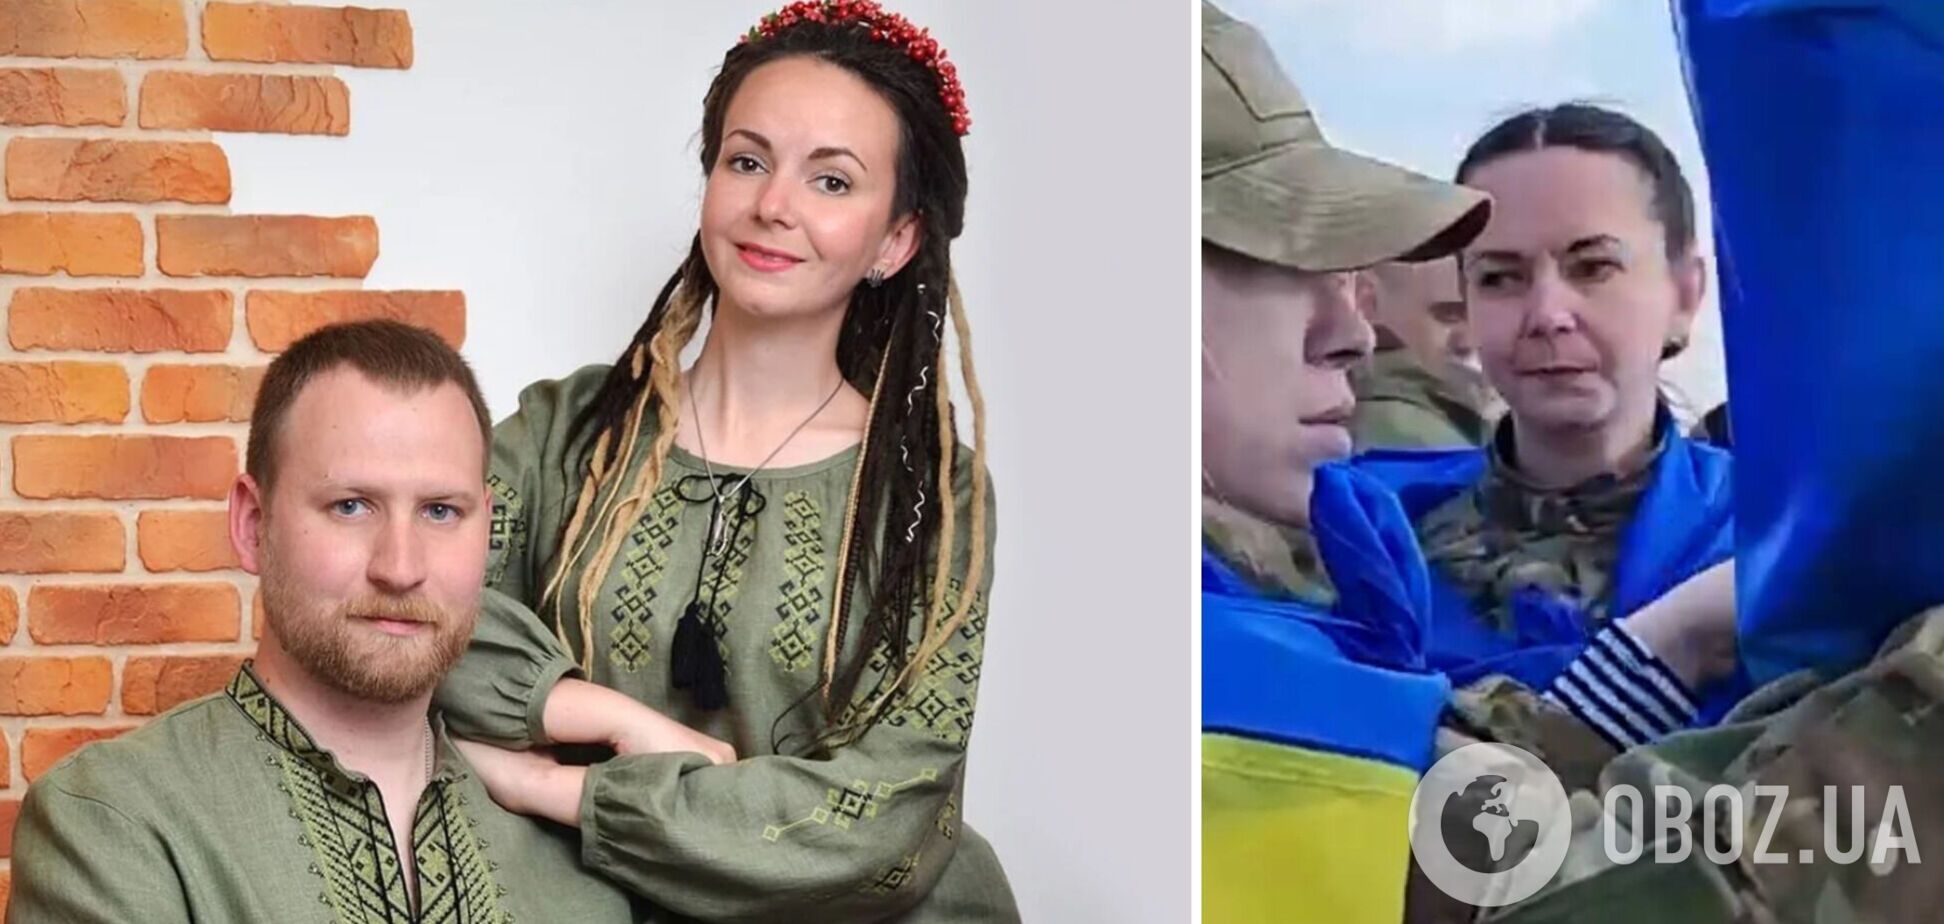 Из плена РФ вернулась Валерия 'Нава' Карпиленко, которая на 'Азовстали' вышла замуж и потеряла любимого. Фото и видео